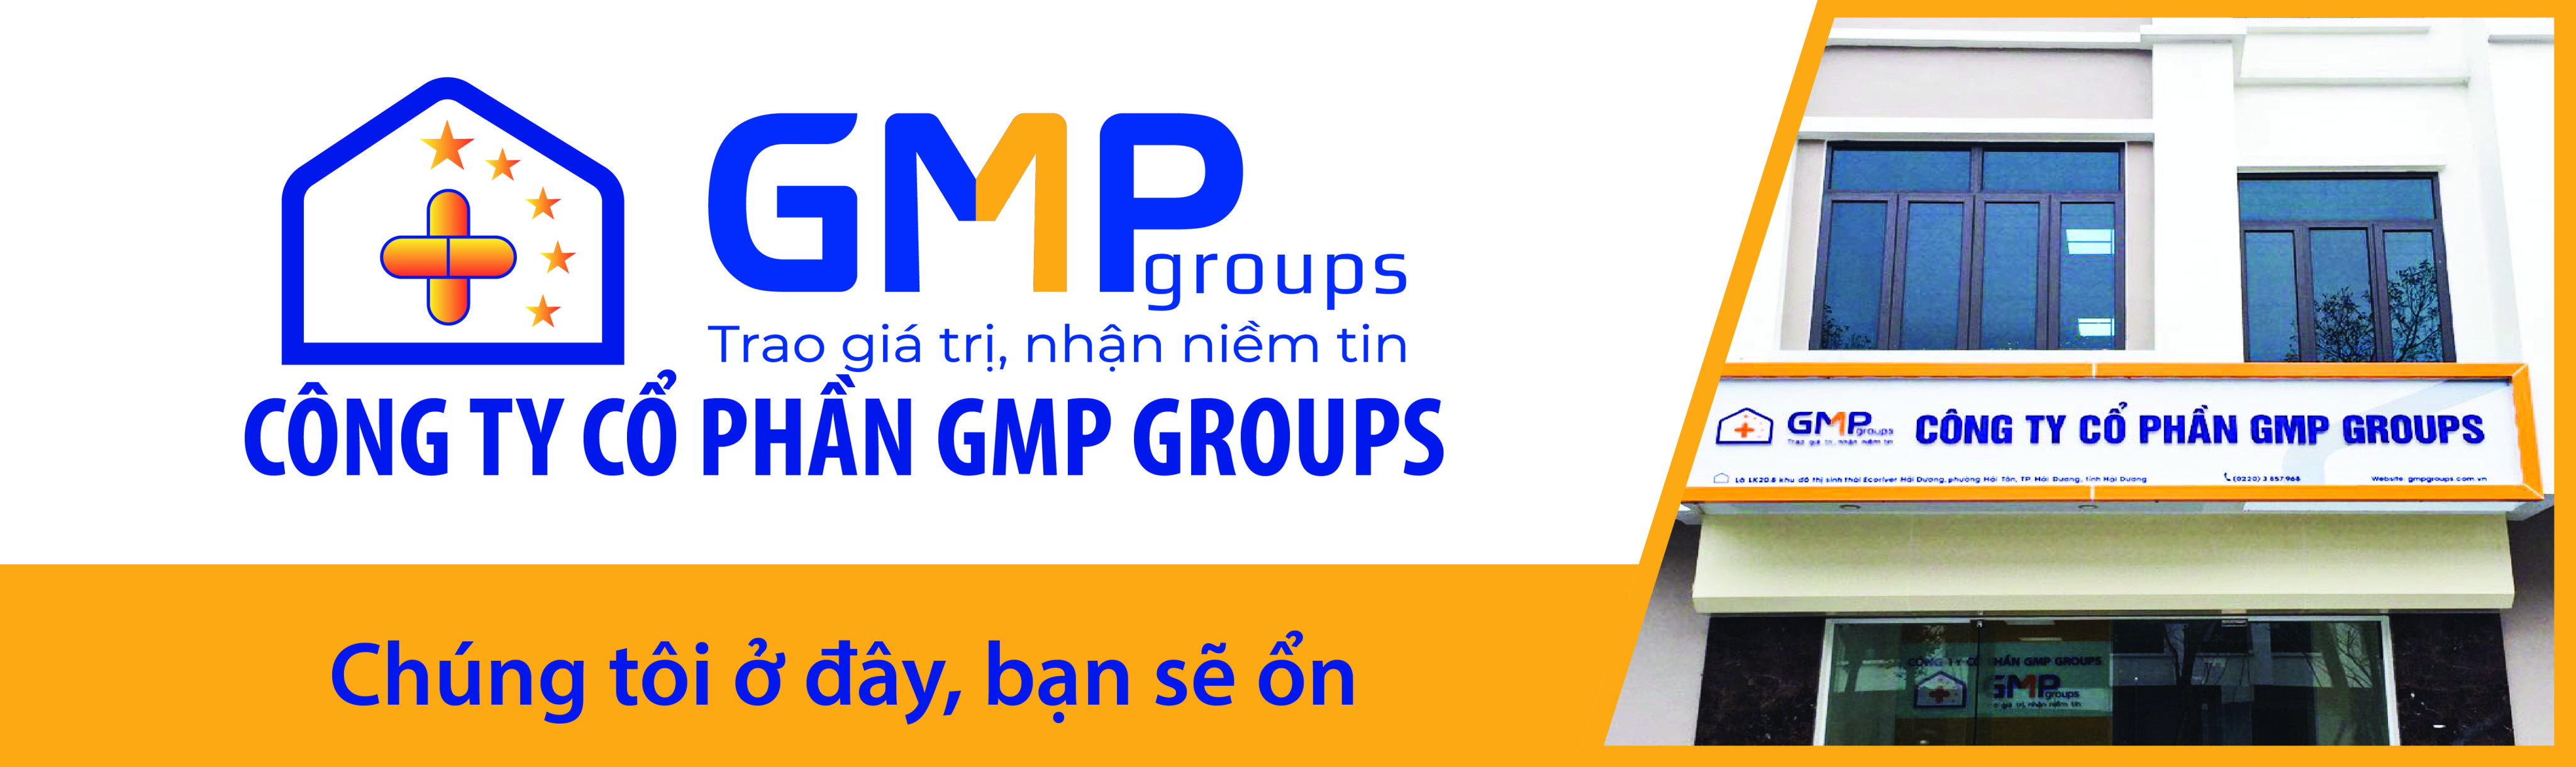 GMP Groups - Dịch vụ thi công, lắp đặt, bảo trì phòng sạch